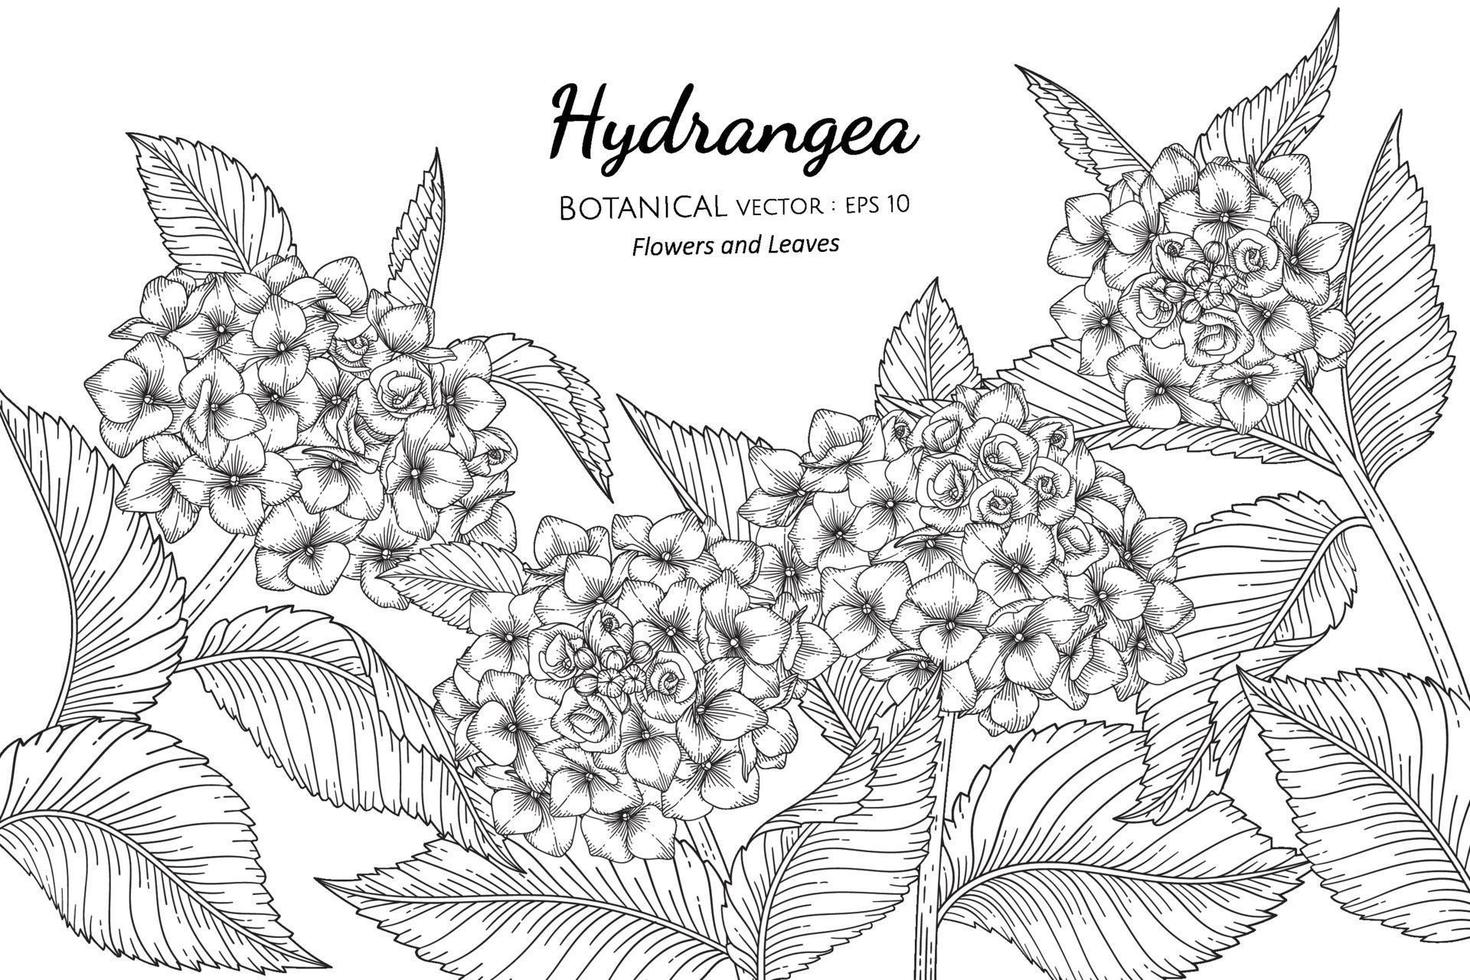 hortensia bloem en blad hand getekend botanische illustratie met lijntekeningen op een witte achtergrond. vector